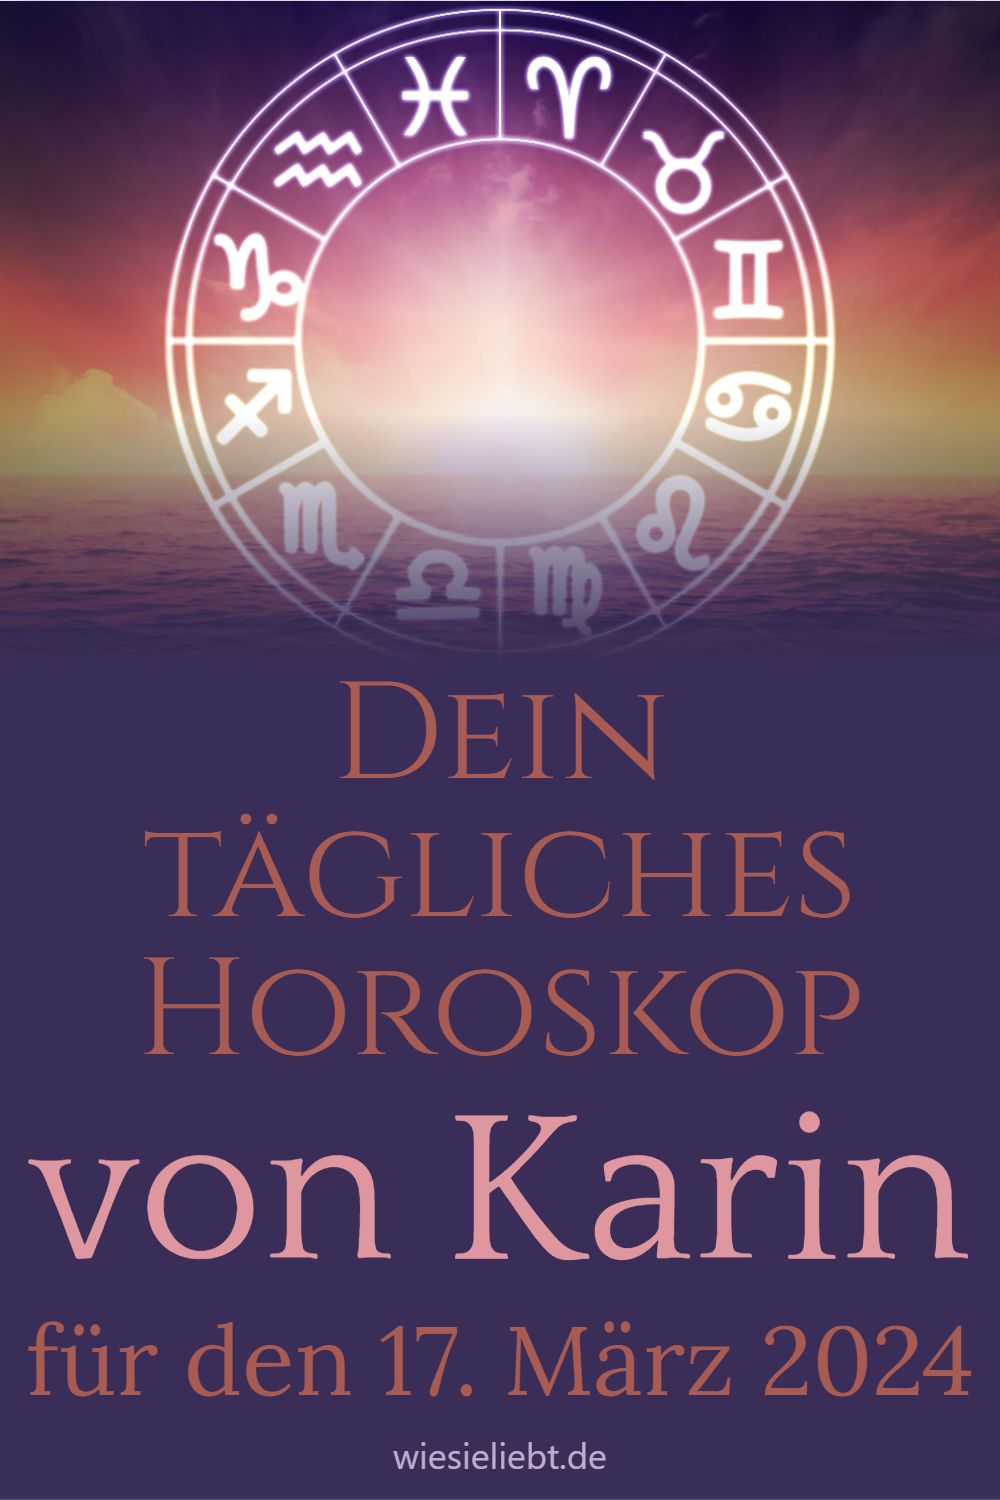 Dein tägliches Horoskop von Karin für den 17. März 2024